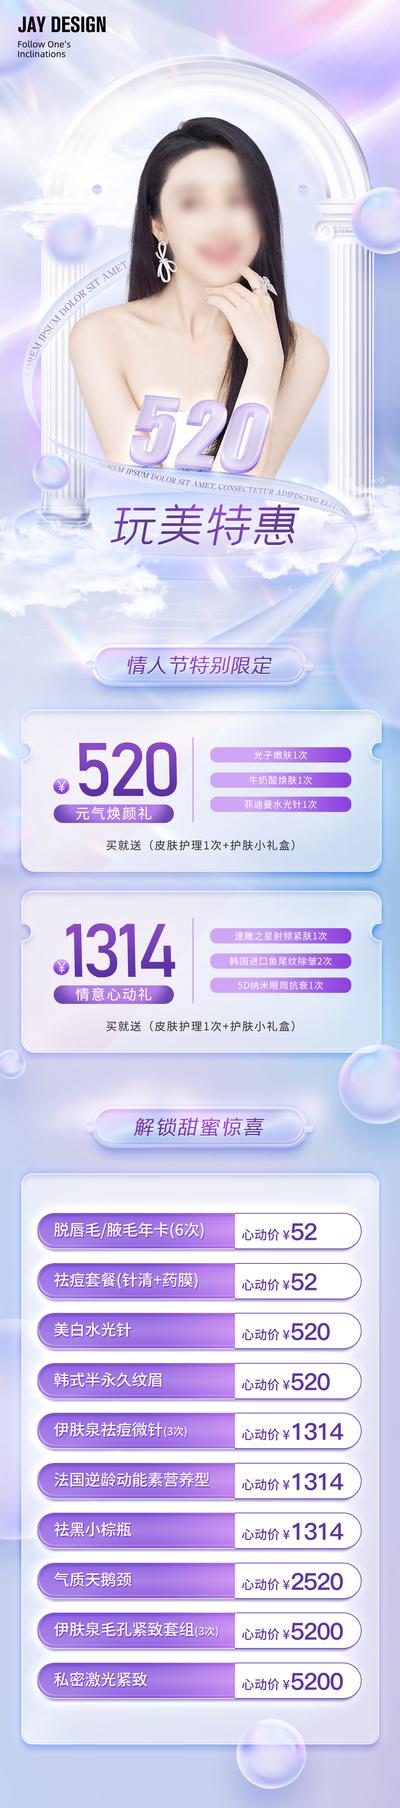 【南门网】广告 医美 活动 人物 促销 520 情人节 渐变 玻璃质感 告白 特惠 唯美 心动 惊喜 紫色